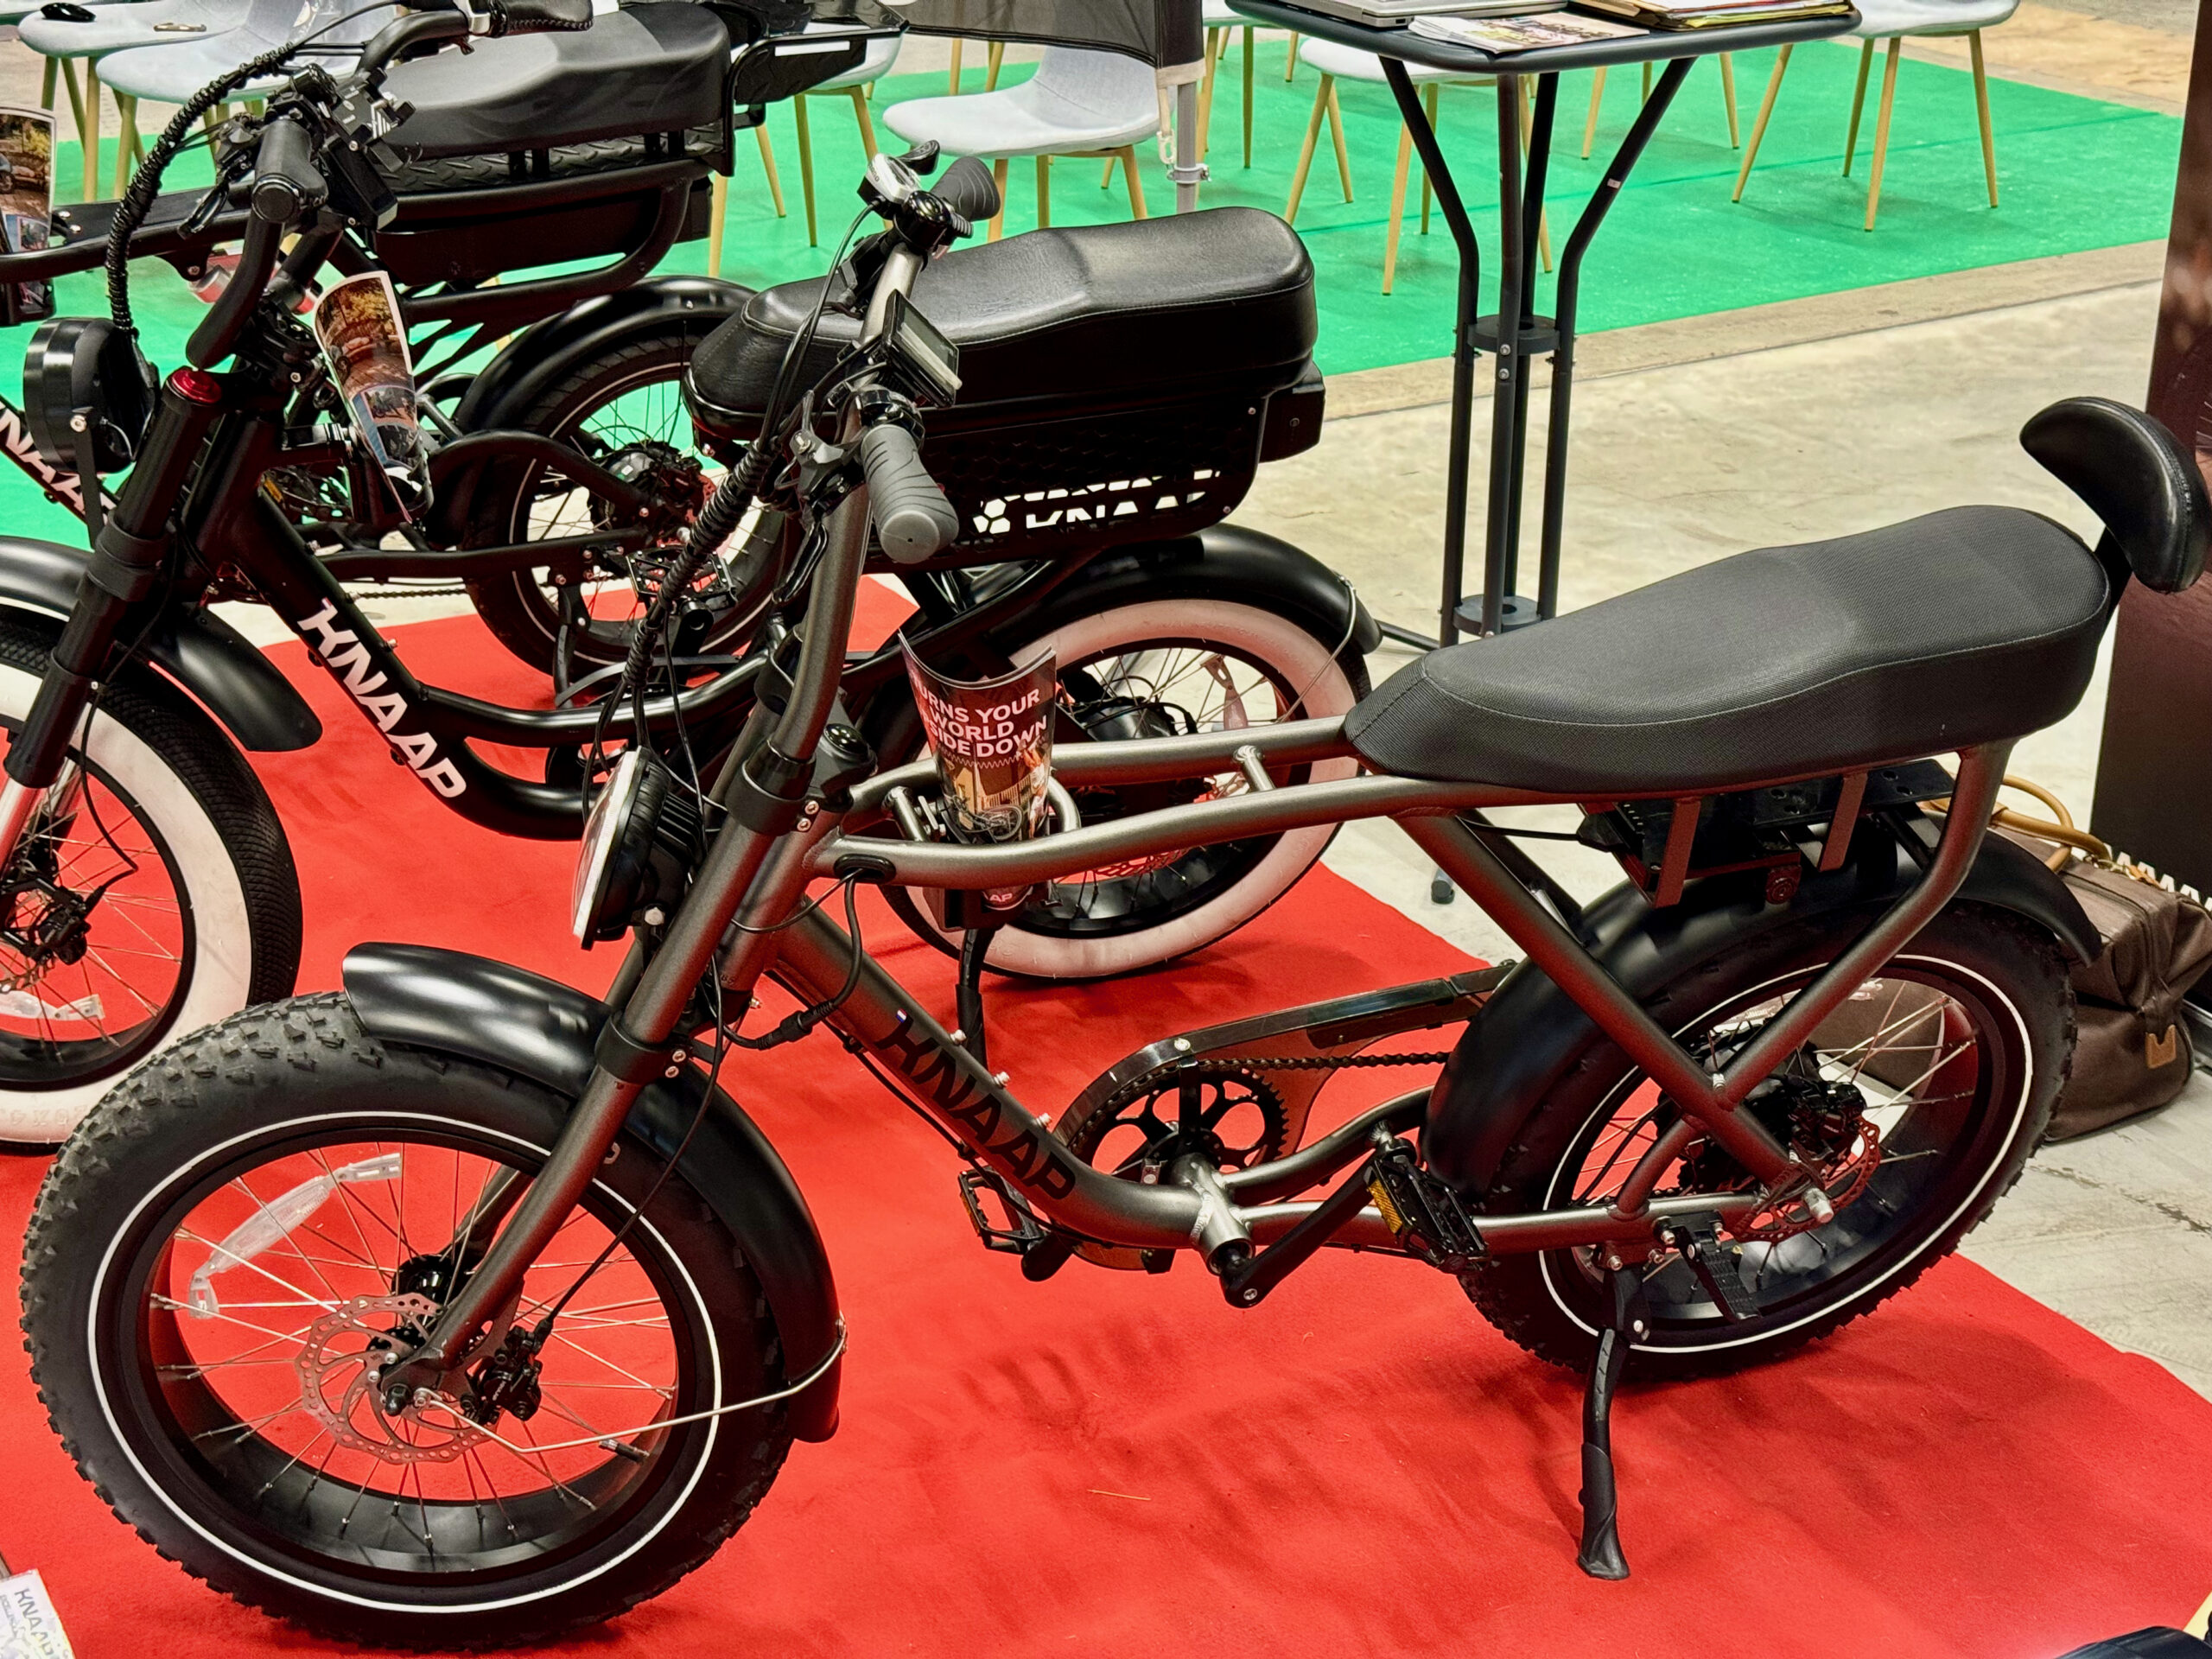 Knapp LON : on a testé ce vélo électrique au look de moto, très fun et capable d’embarquer deux adultes